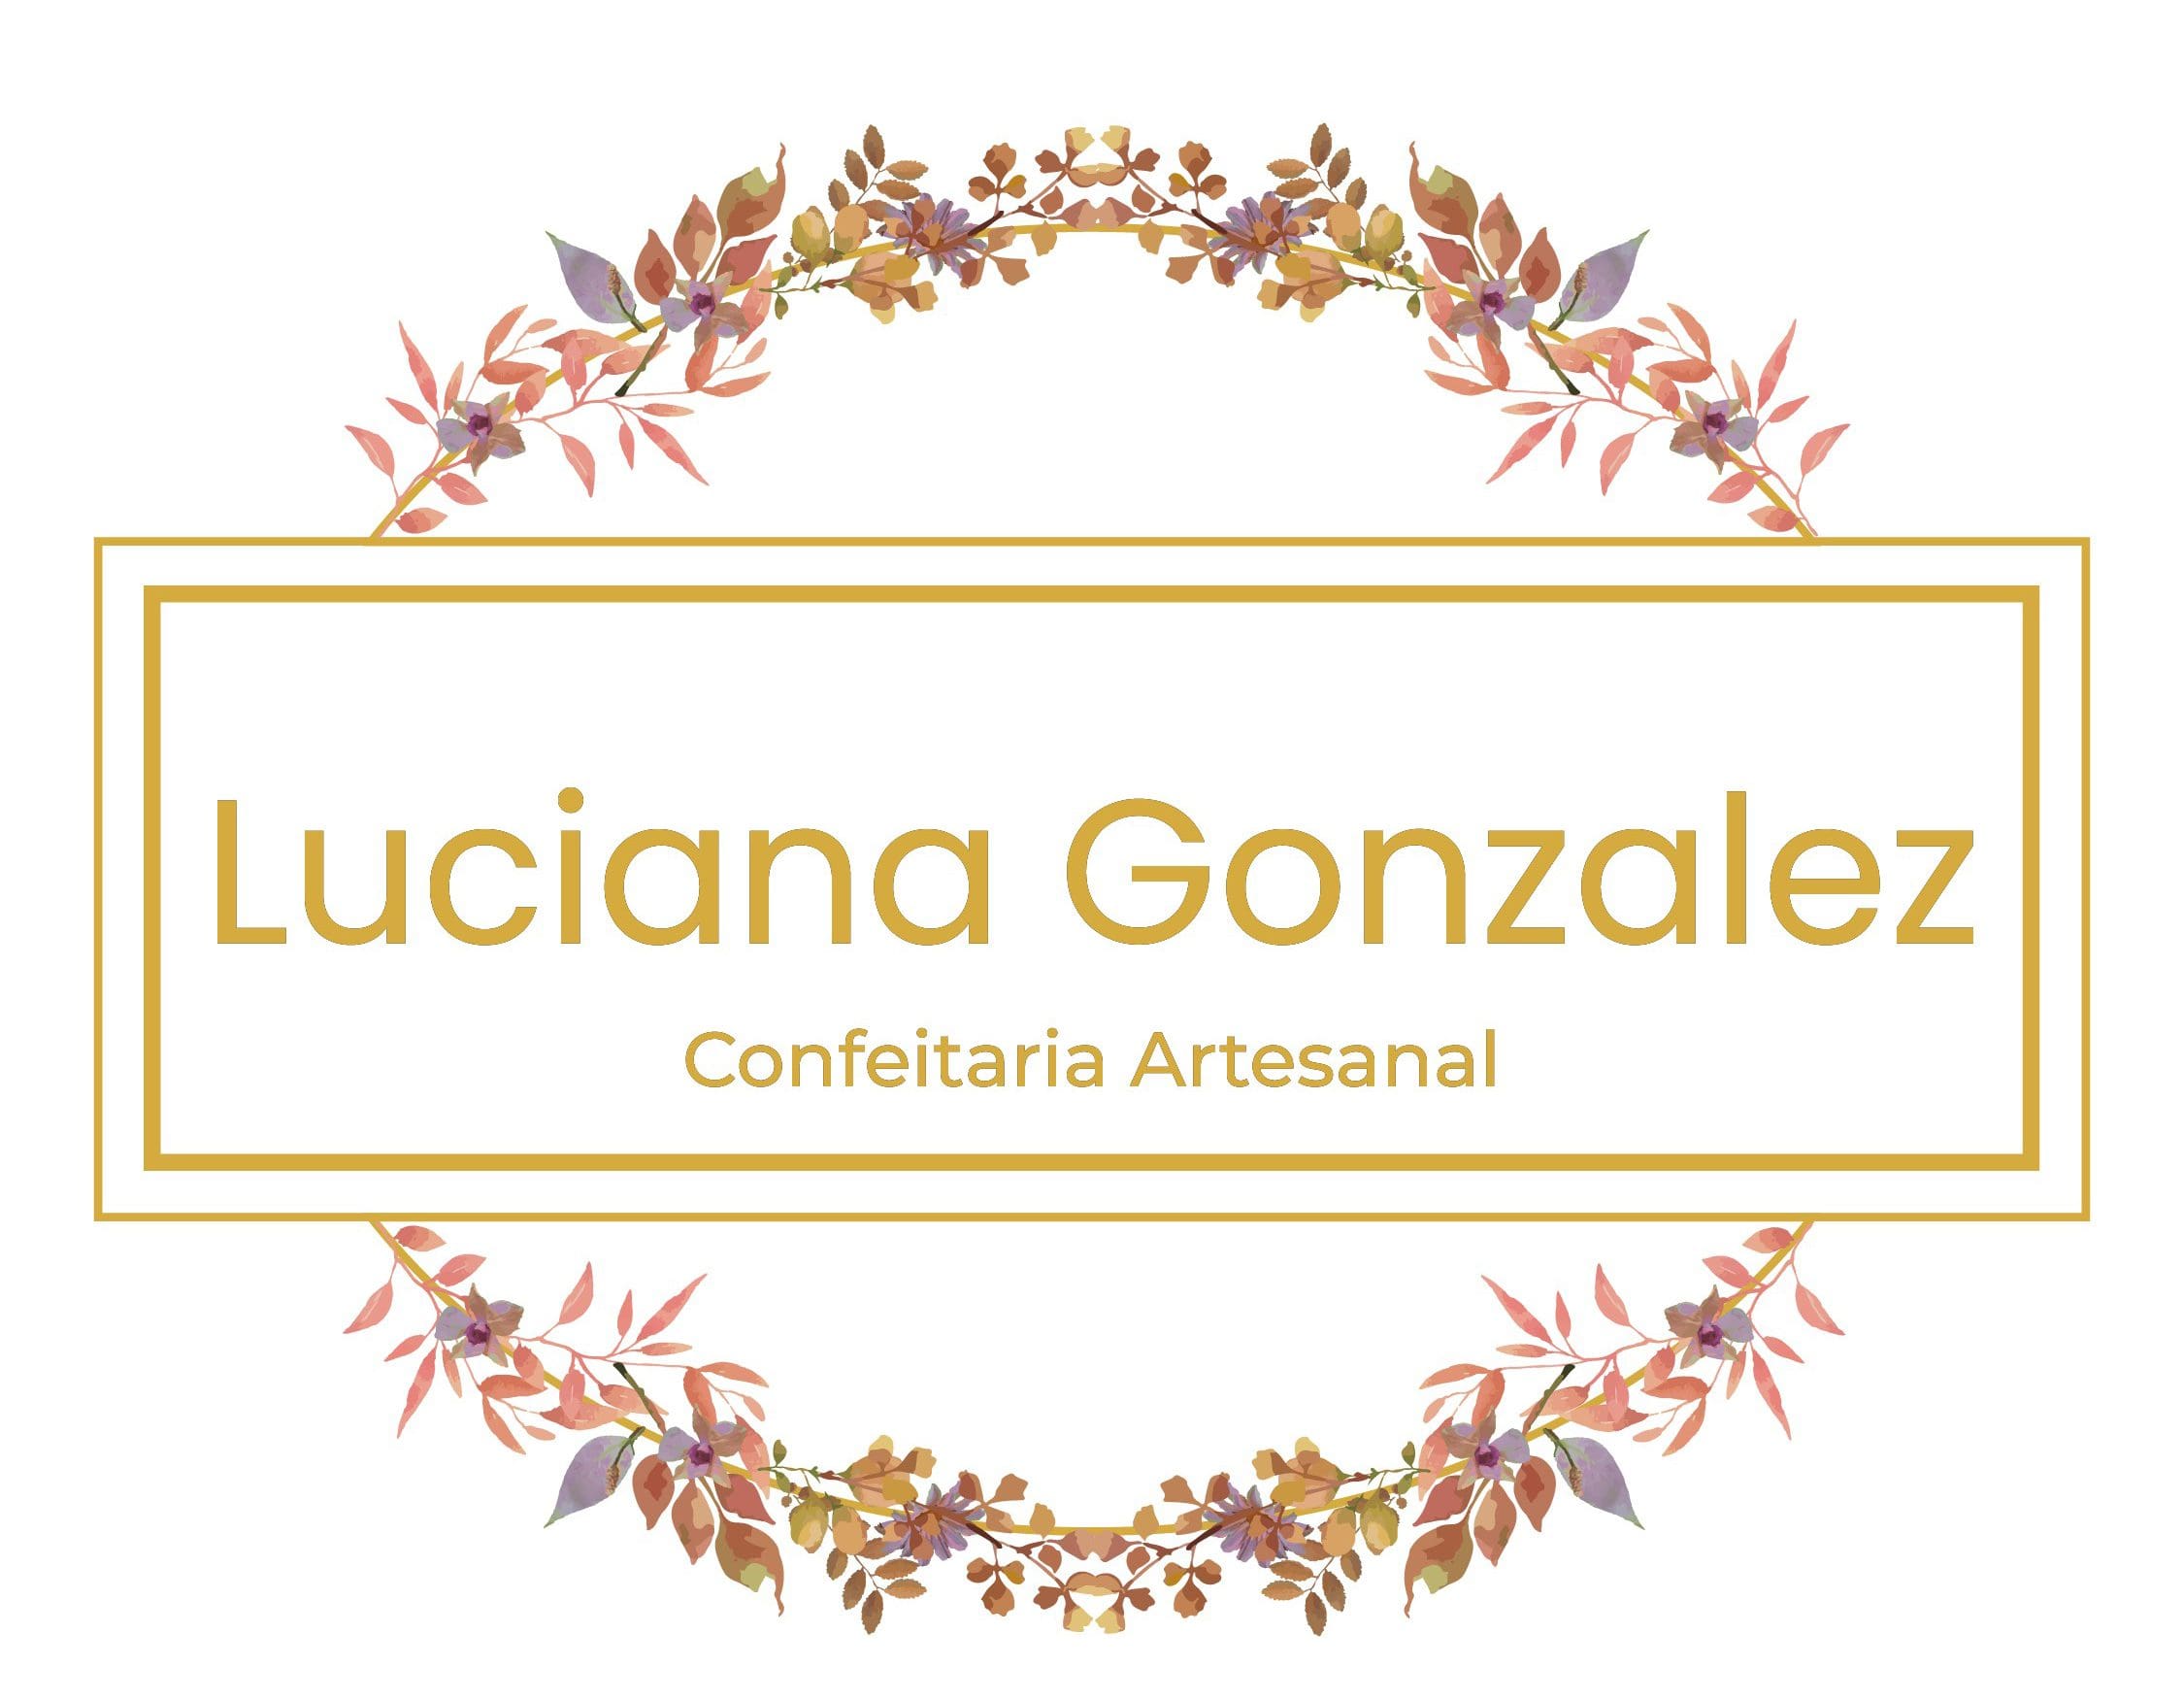 Luciana Gonzales Confeitaria Artesanal